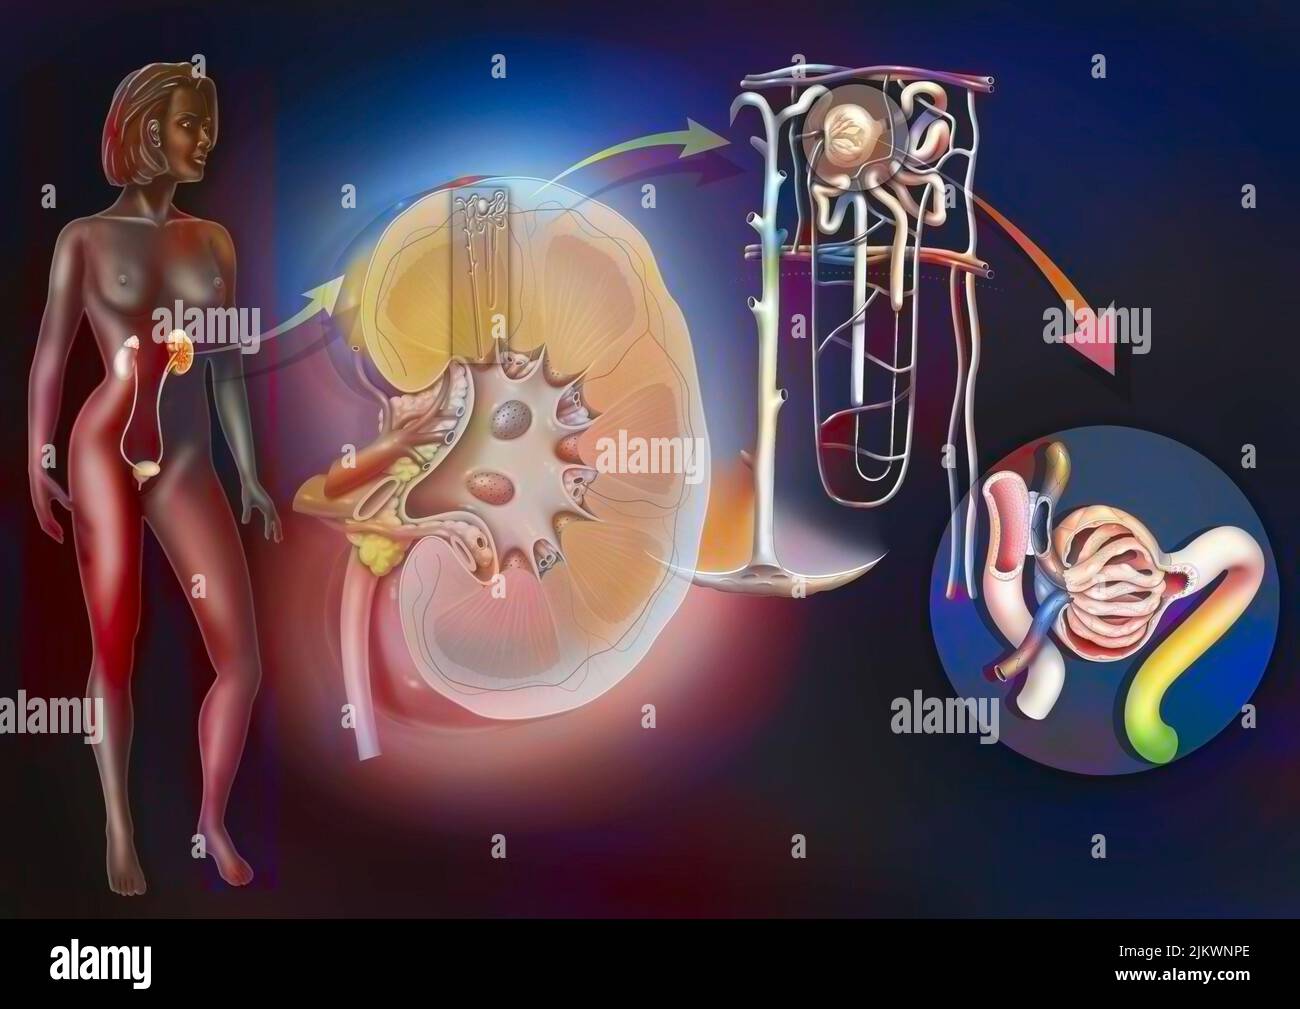 Sistema urinario dal rene al glomerulo con strutture di rene e uretere. Foto Stock